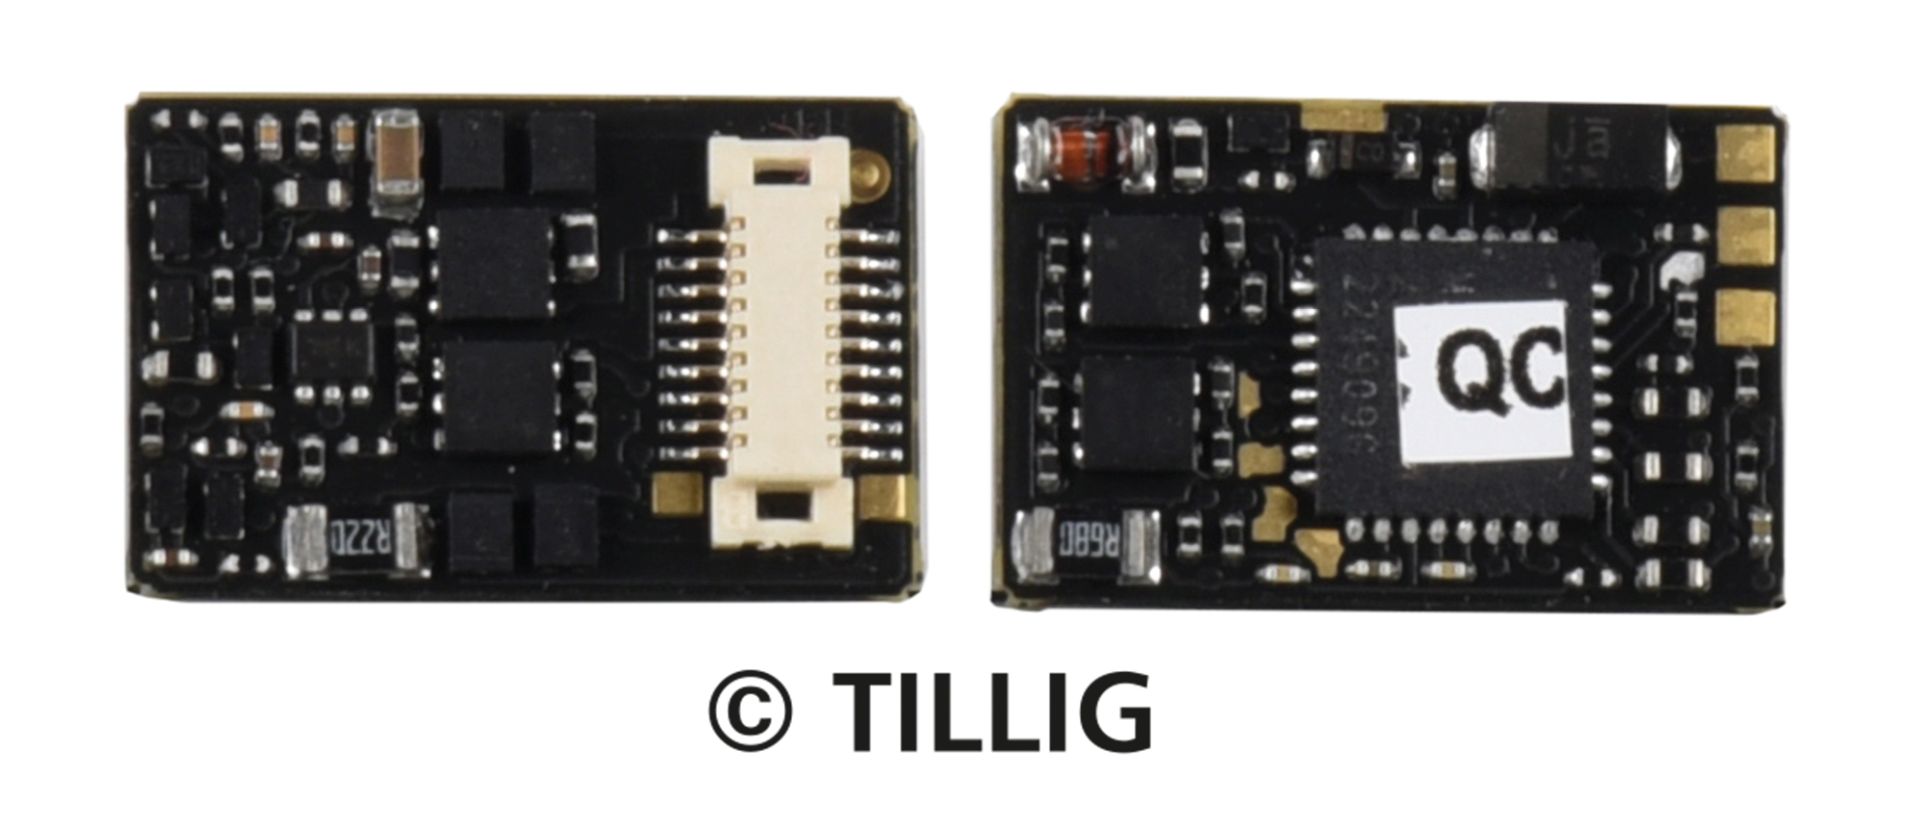 Tillig 66041 - Decoder Next 18, V 100 DR